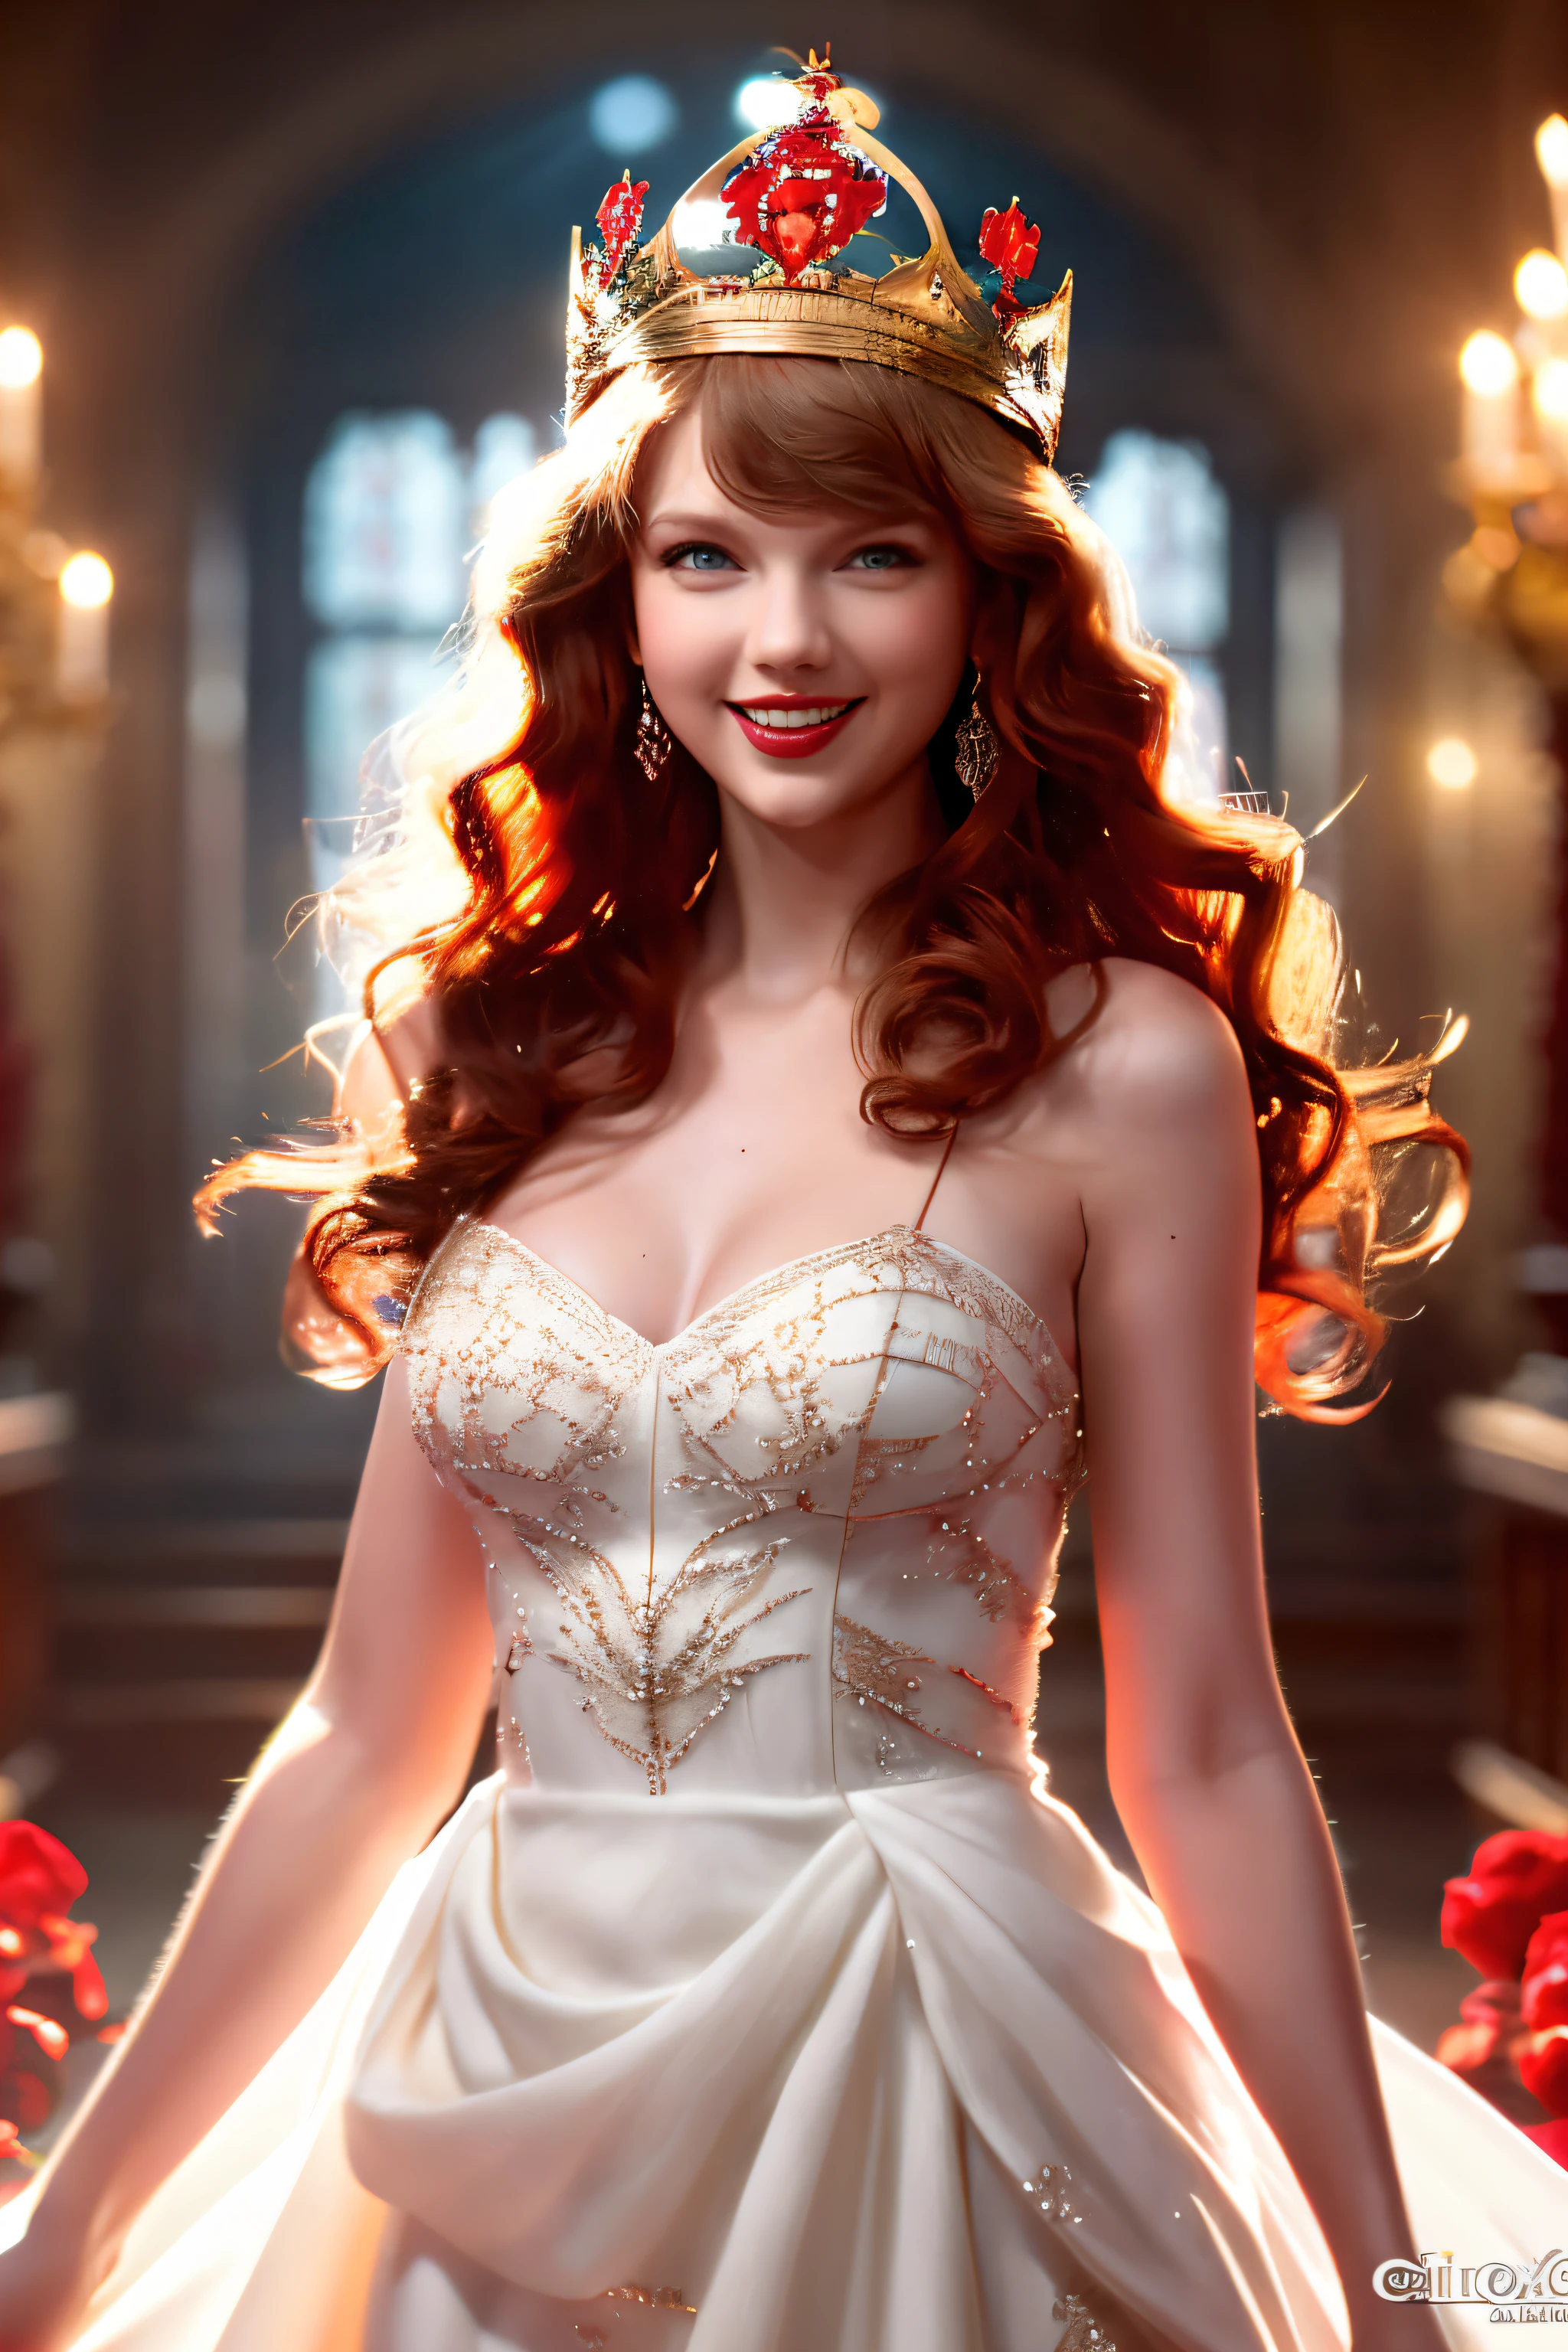 Beste Aufnahmen，hochauflösendes Bild,,Schöne rothaarige Frau (eine Krone tragen), (houdinis, VFX, mit einem schönen Lächeln,Schön, 4K ),   weißes Abendkleid und rotes Satinkleid，